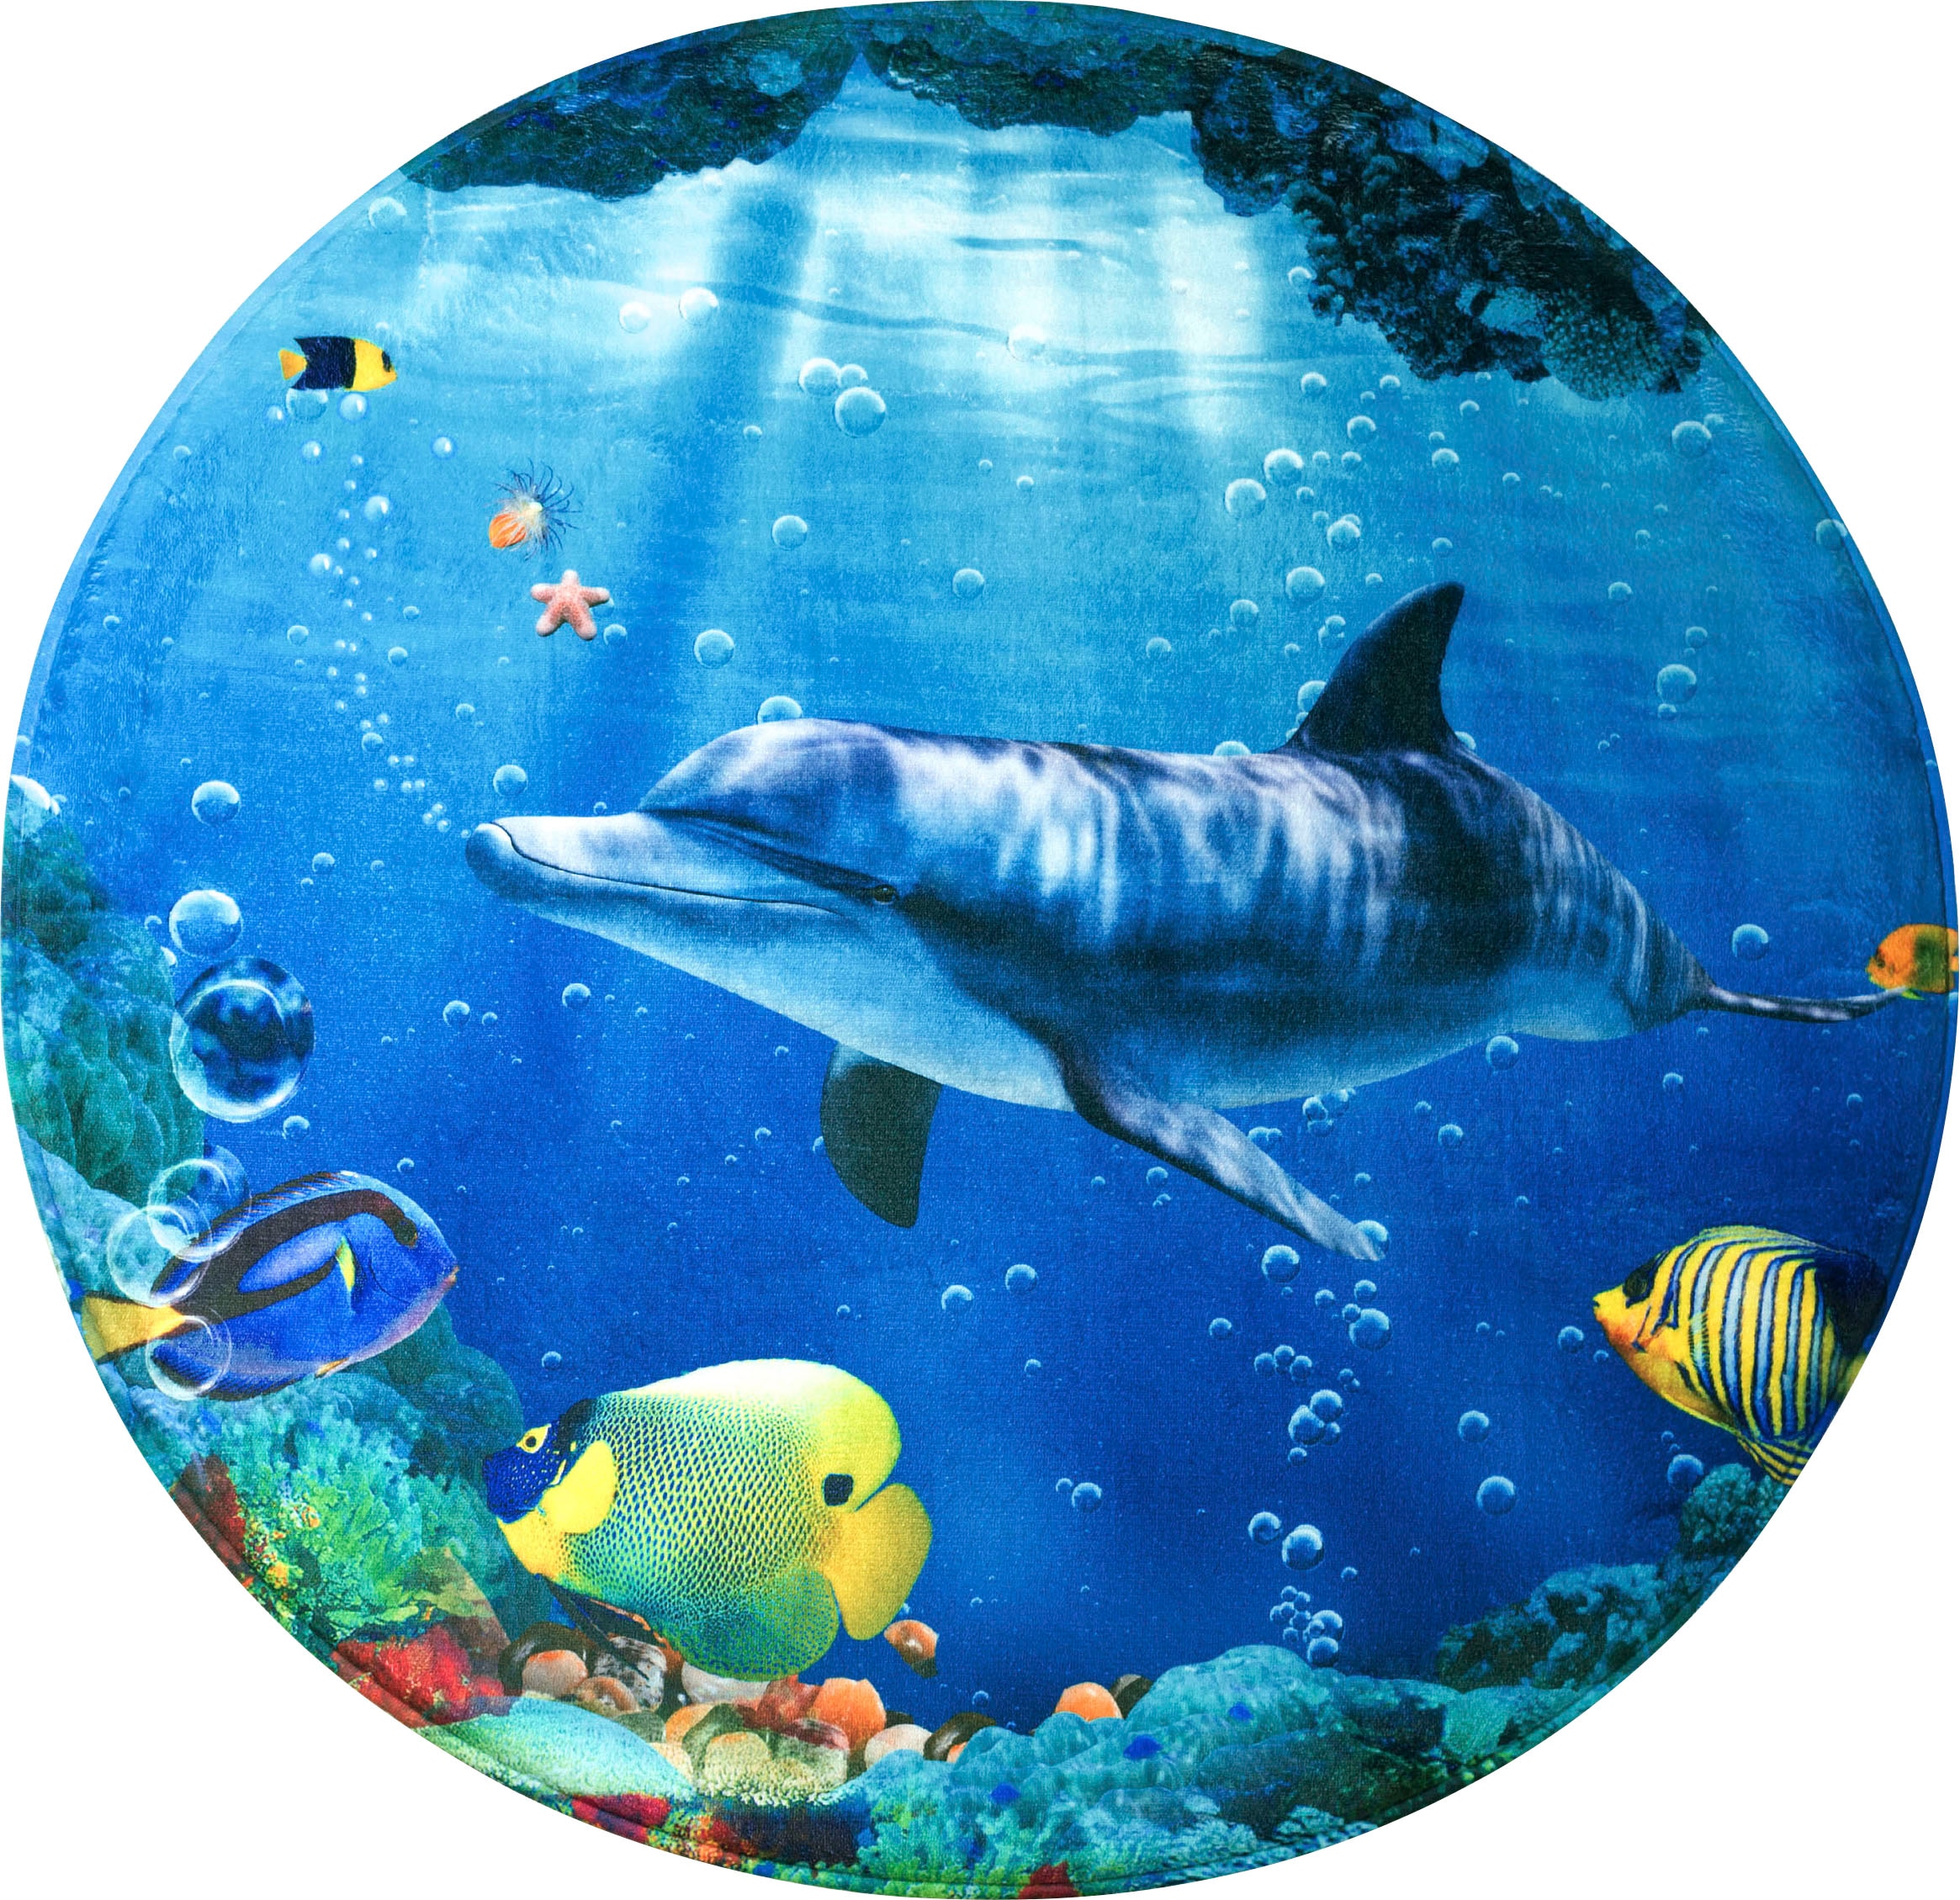 Sanilo Schaum-Badematte »Delphin Korallen«, Höhe 15 mm, Memory Schaum-rutschhemmend beschichtet, fussbodenheizungsgeeignet-schnell trocknend-strapazierfähig, super weich, kräftige Farben, rutschhemmend, waschbar, Ø80cm